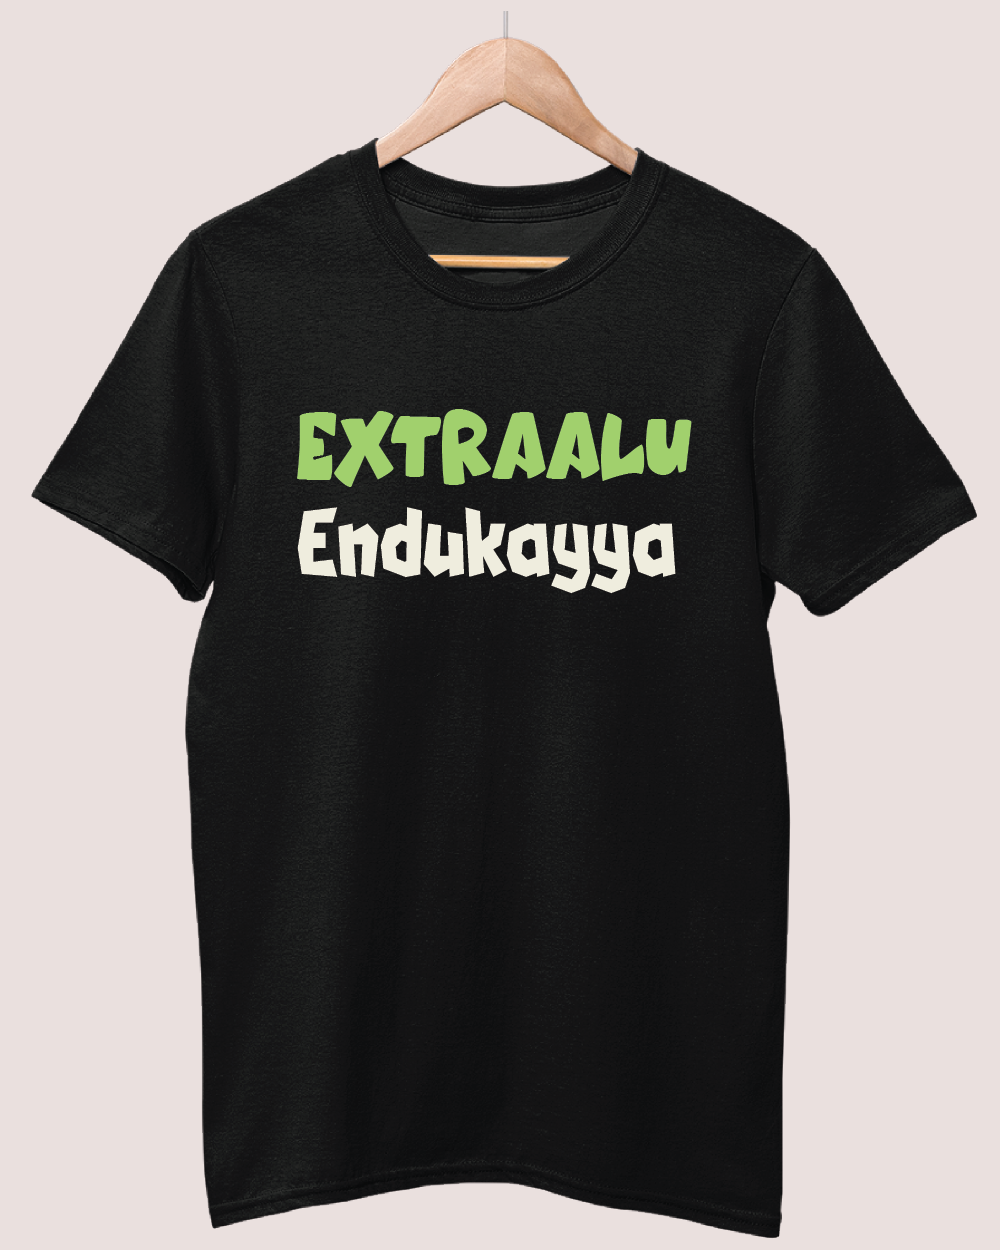 Extraalu endukayya T-shirt